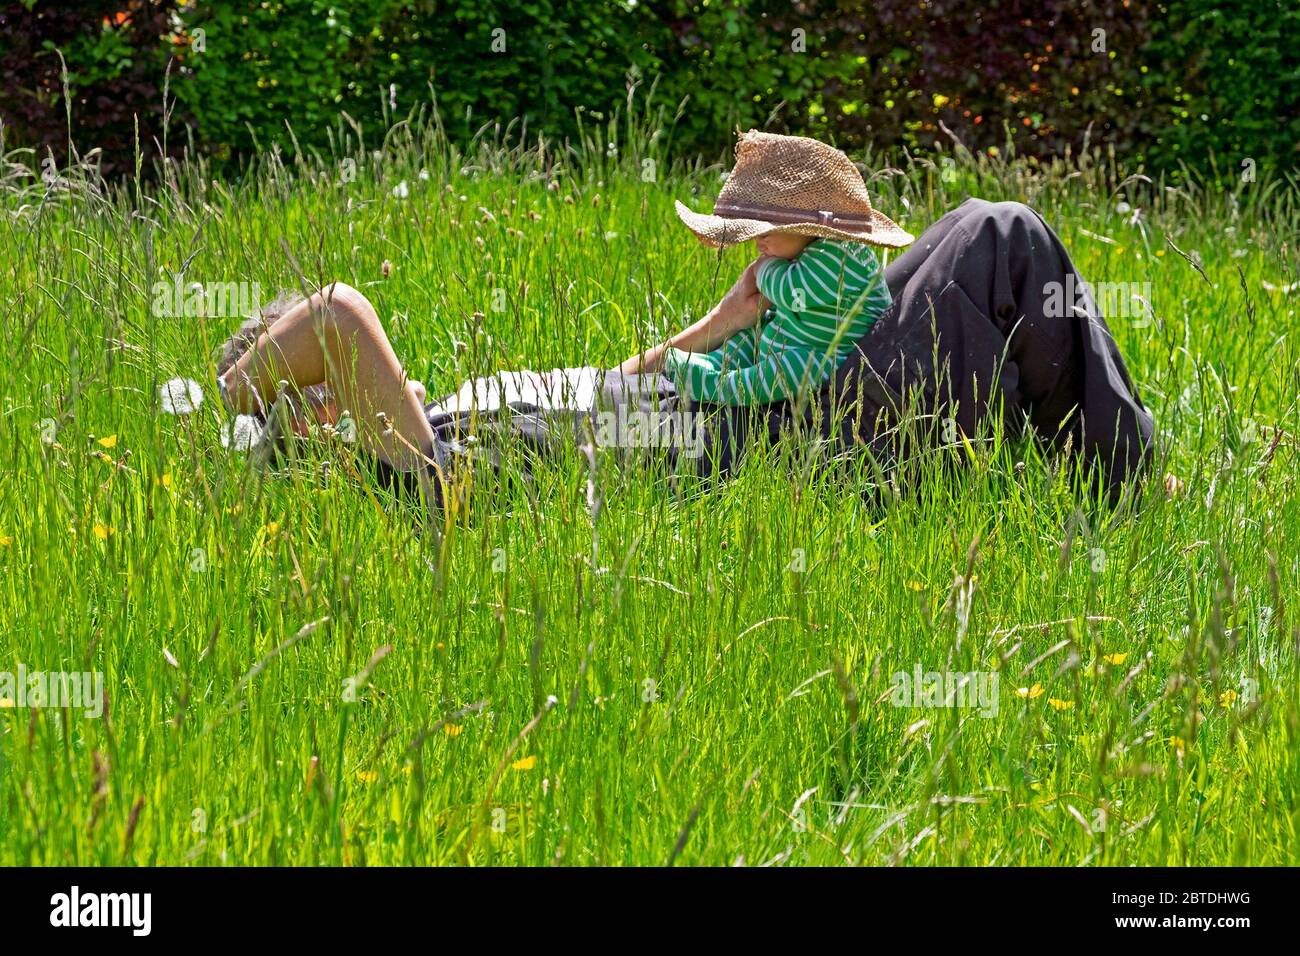 Personne grand-père couché dans prairie herbe longue pelouse tenant bébé Port de chapeau de paille au printemps Mai jardin 2020 Carmarthenshire pays de Galles R.-U. KATHY DEWITT Banque D'Images